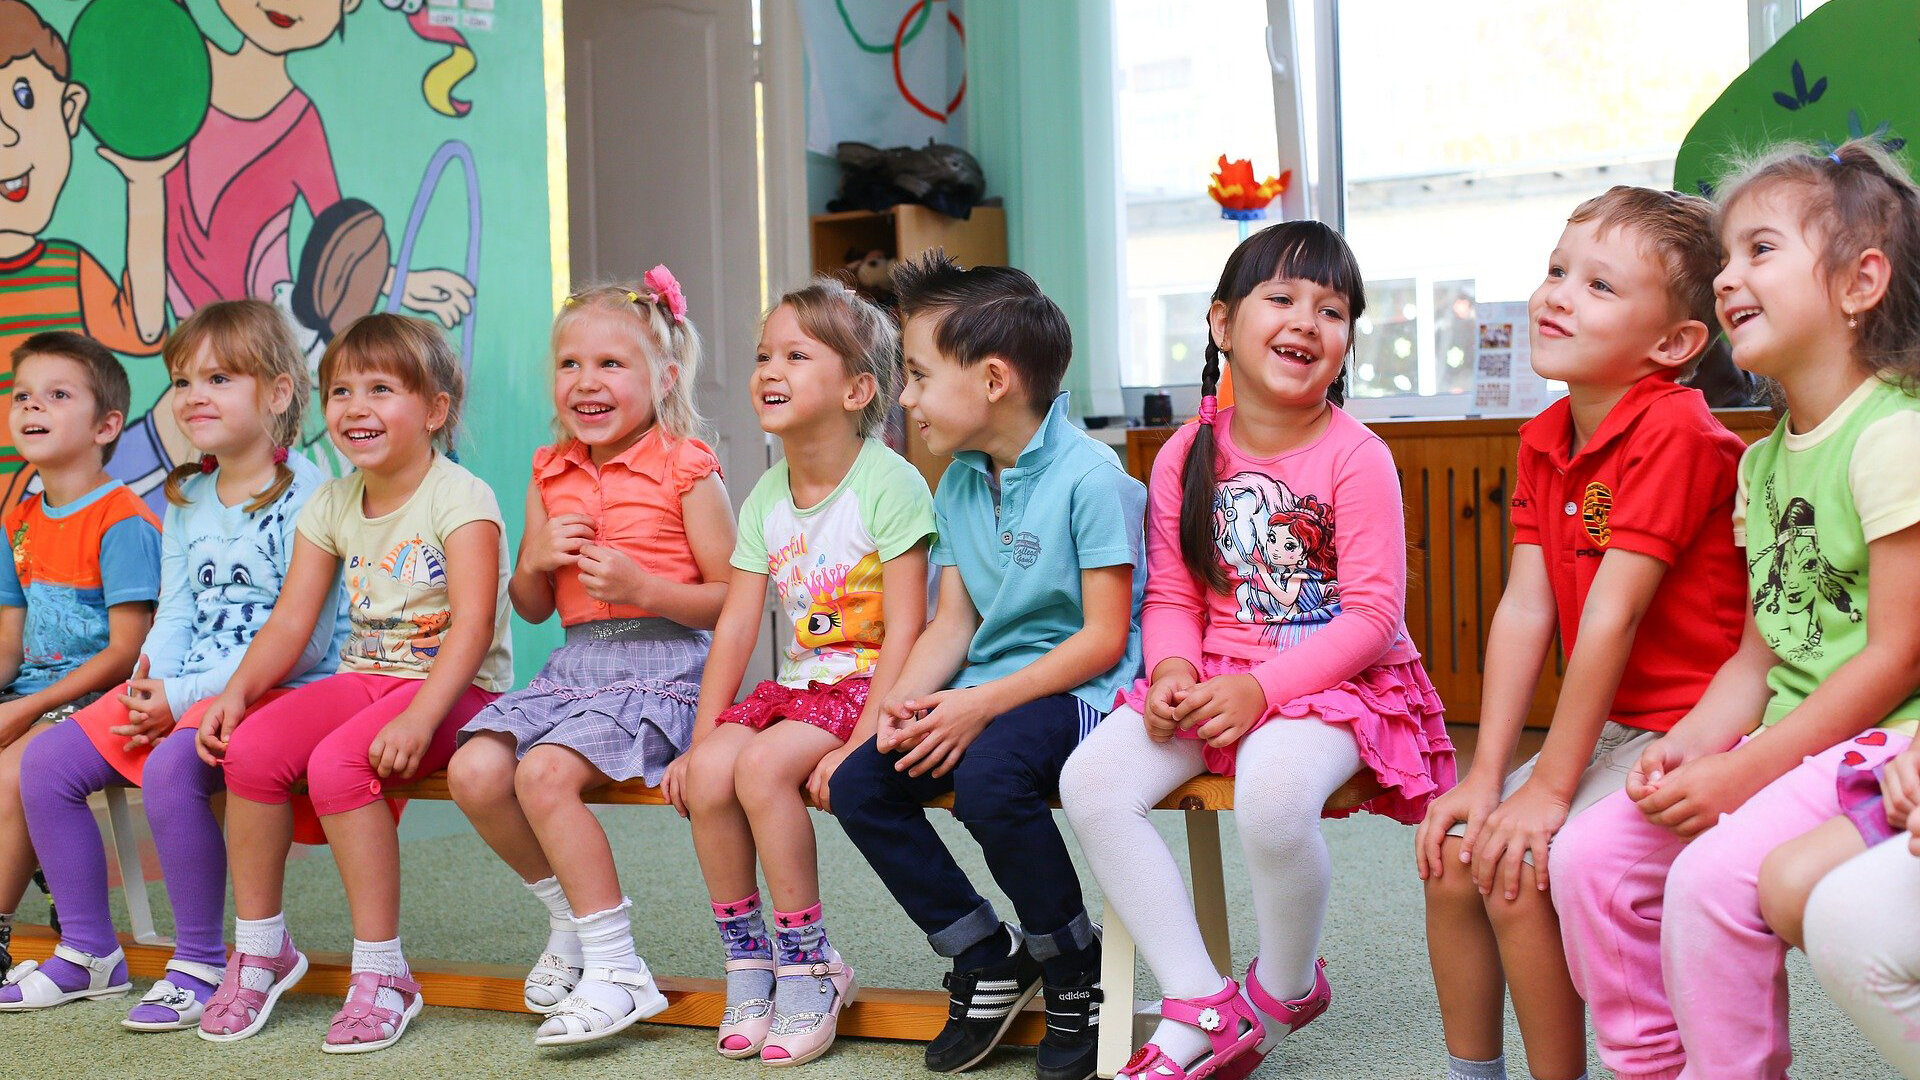 Kinder in einem Kindergarten, die Spaß haben / Children in a kindergarten having fun